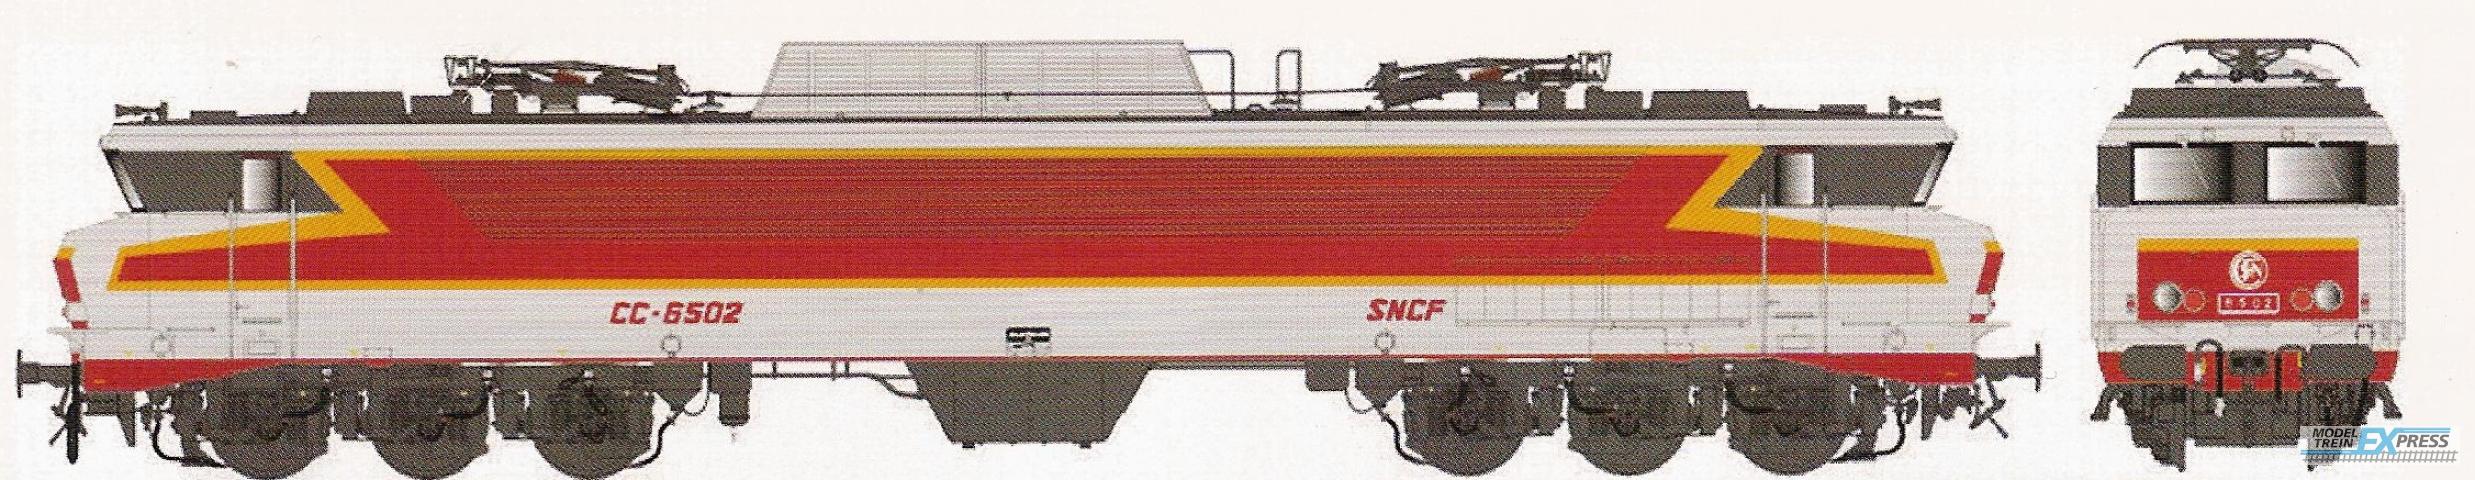 LS Models 10820 CC 6502, metaalgrijs/rood/oranje, TEE, platen, Beffara logo, zuidoost  /  Ep. IV  /  SNCF  /  HO  /  AC  /  1 P.